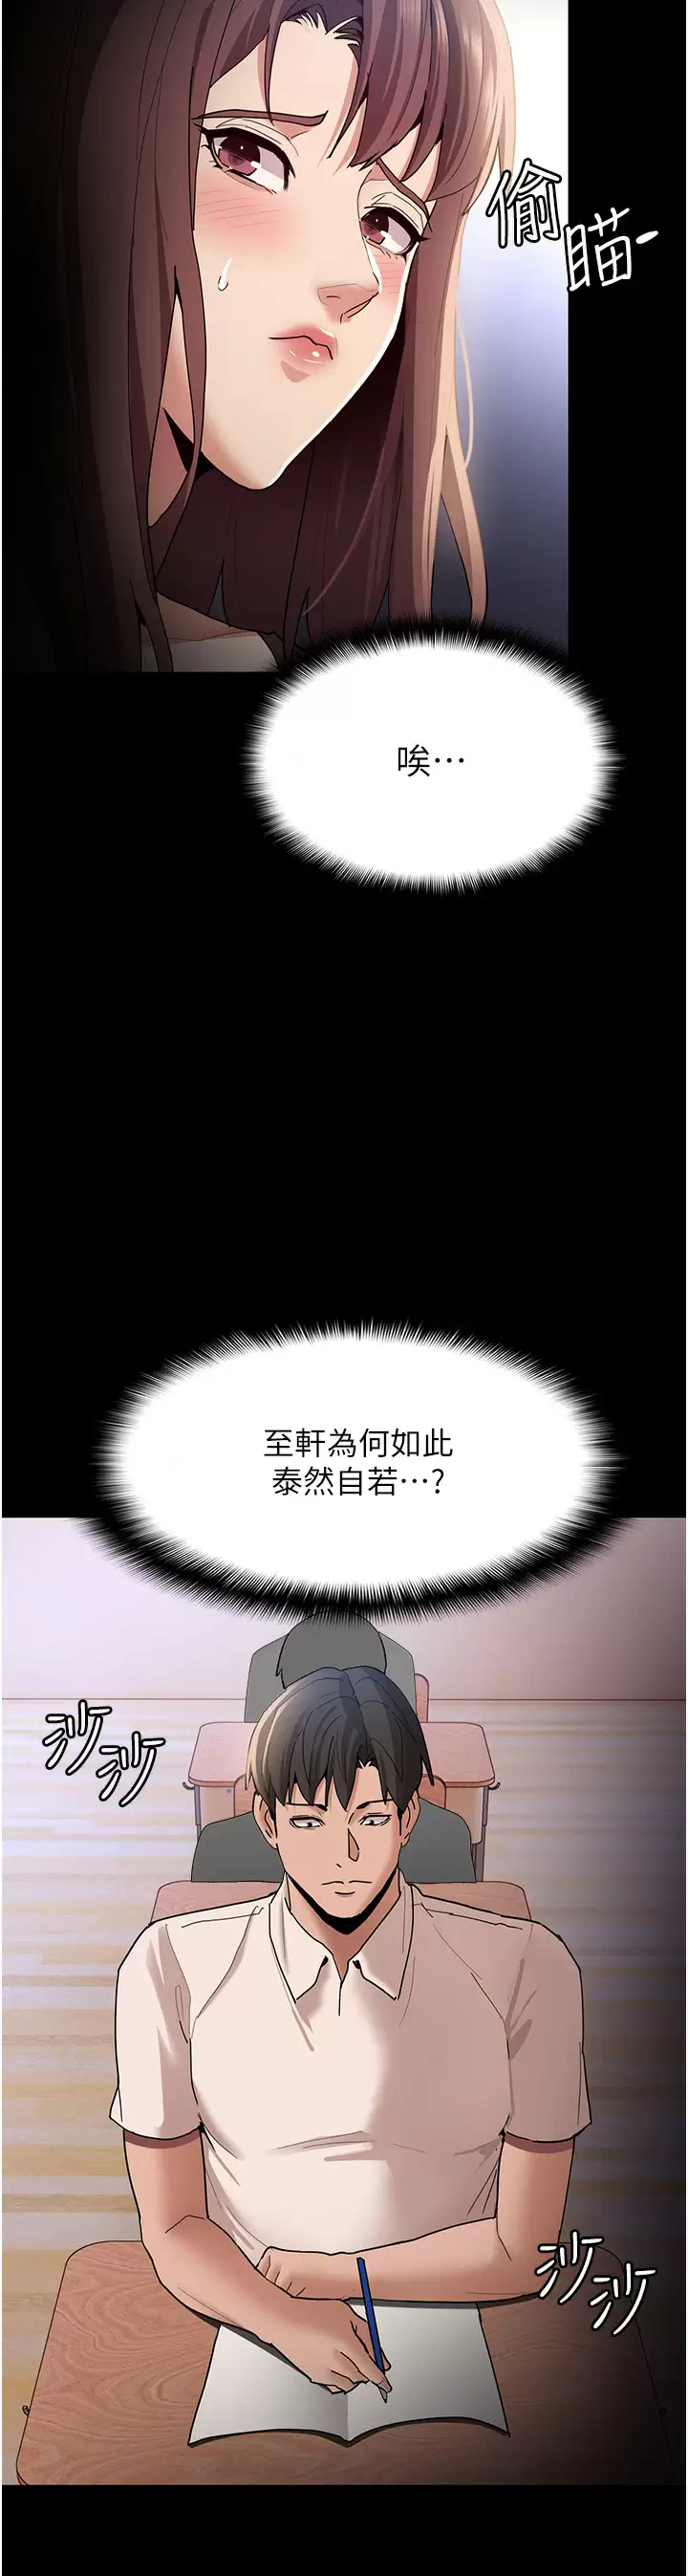 韩国污漫画 癡漢成癮 第13话 自投罗网的猎物 27